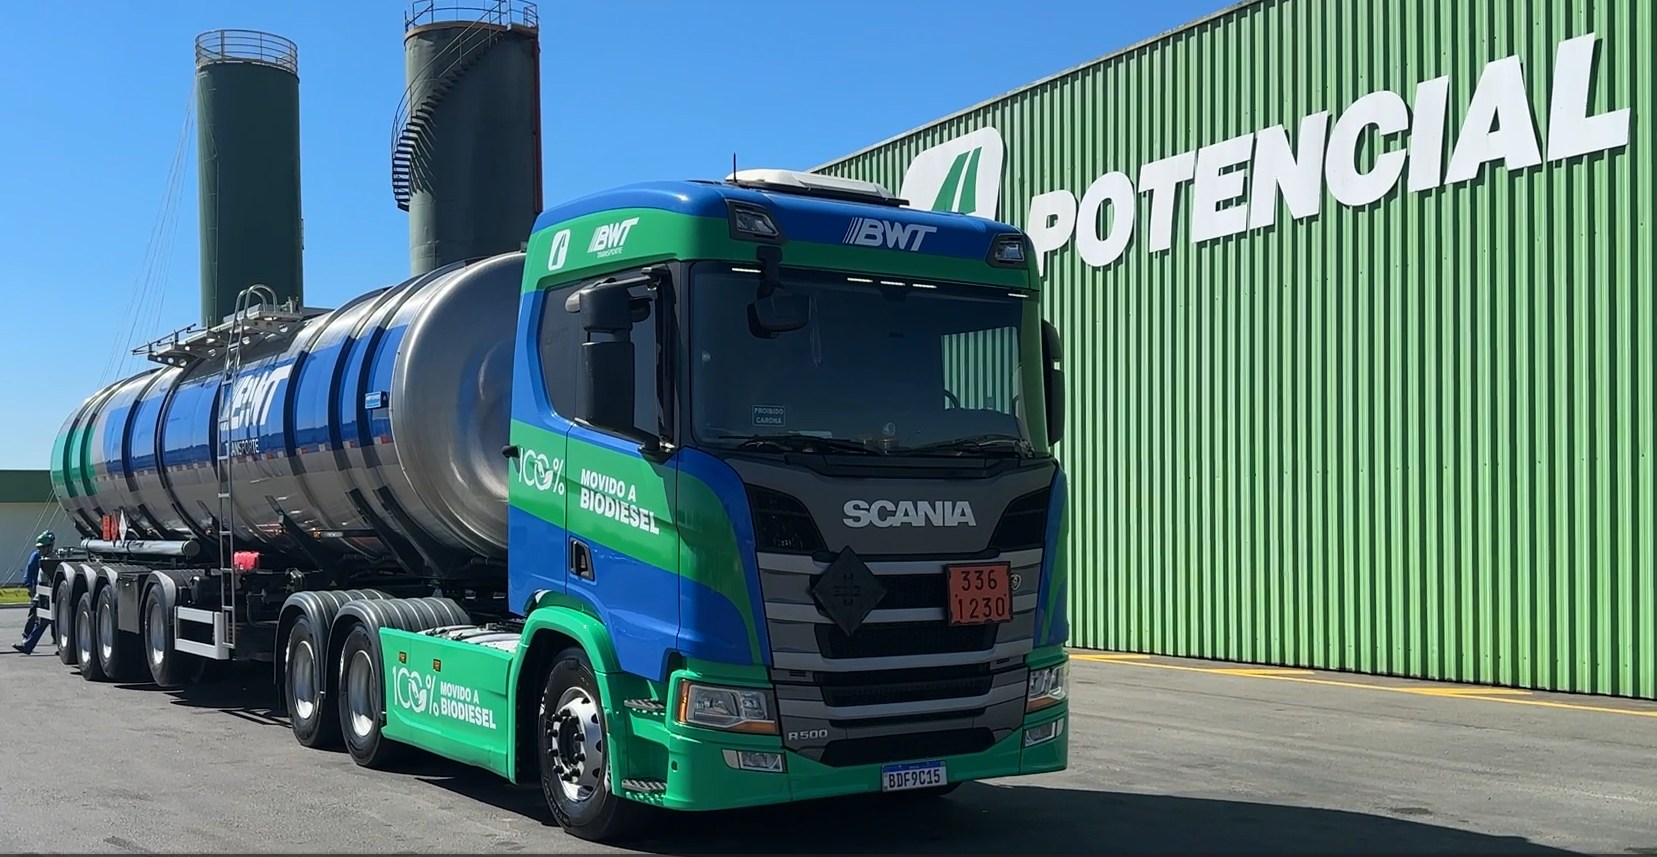 Grupo Potencial inicia transição energética da frota de caminhões para biodiesel. Na imagem: Primeiro caminhão da frota da Potencial movido a biodiesel, nas cores verde e azul, iniciou operação em 28 de dezembro de 2023 (Foto: Divulgação)